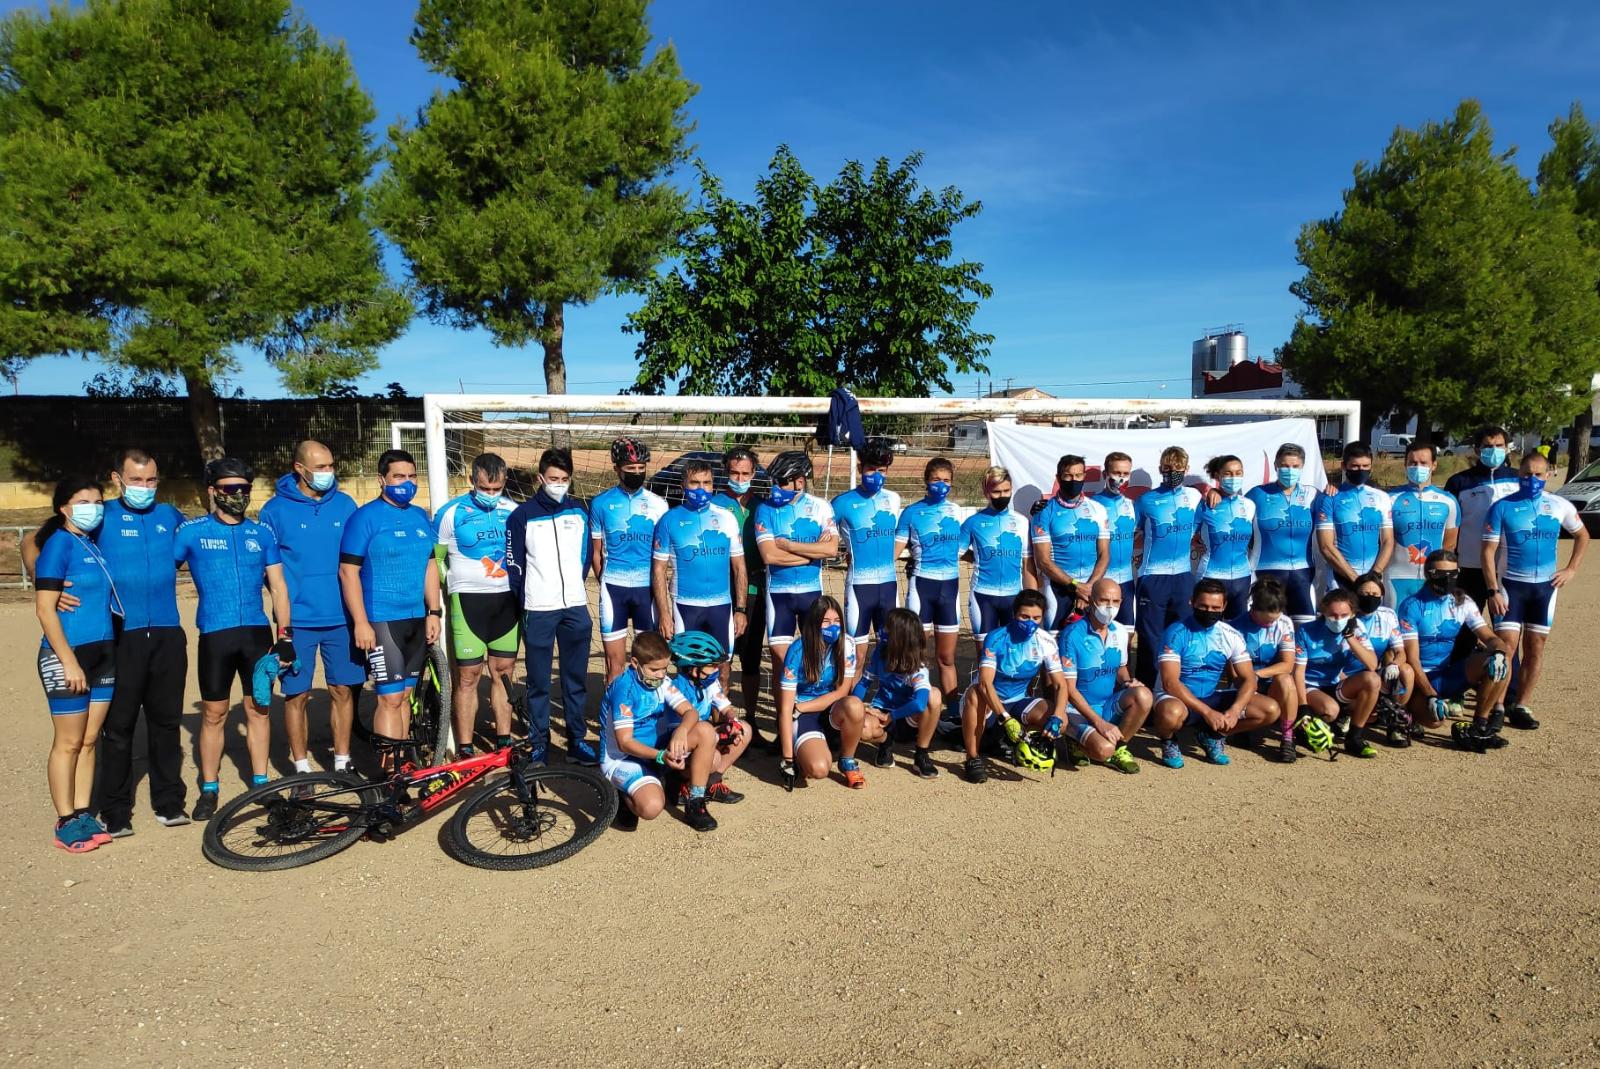 La Sección de Orientación del Club Fluvial de Lugo campeona de España de clubes 2020 en la modalidad de Orientación de Bicicleta de Montaña.